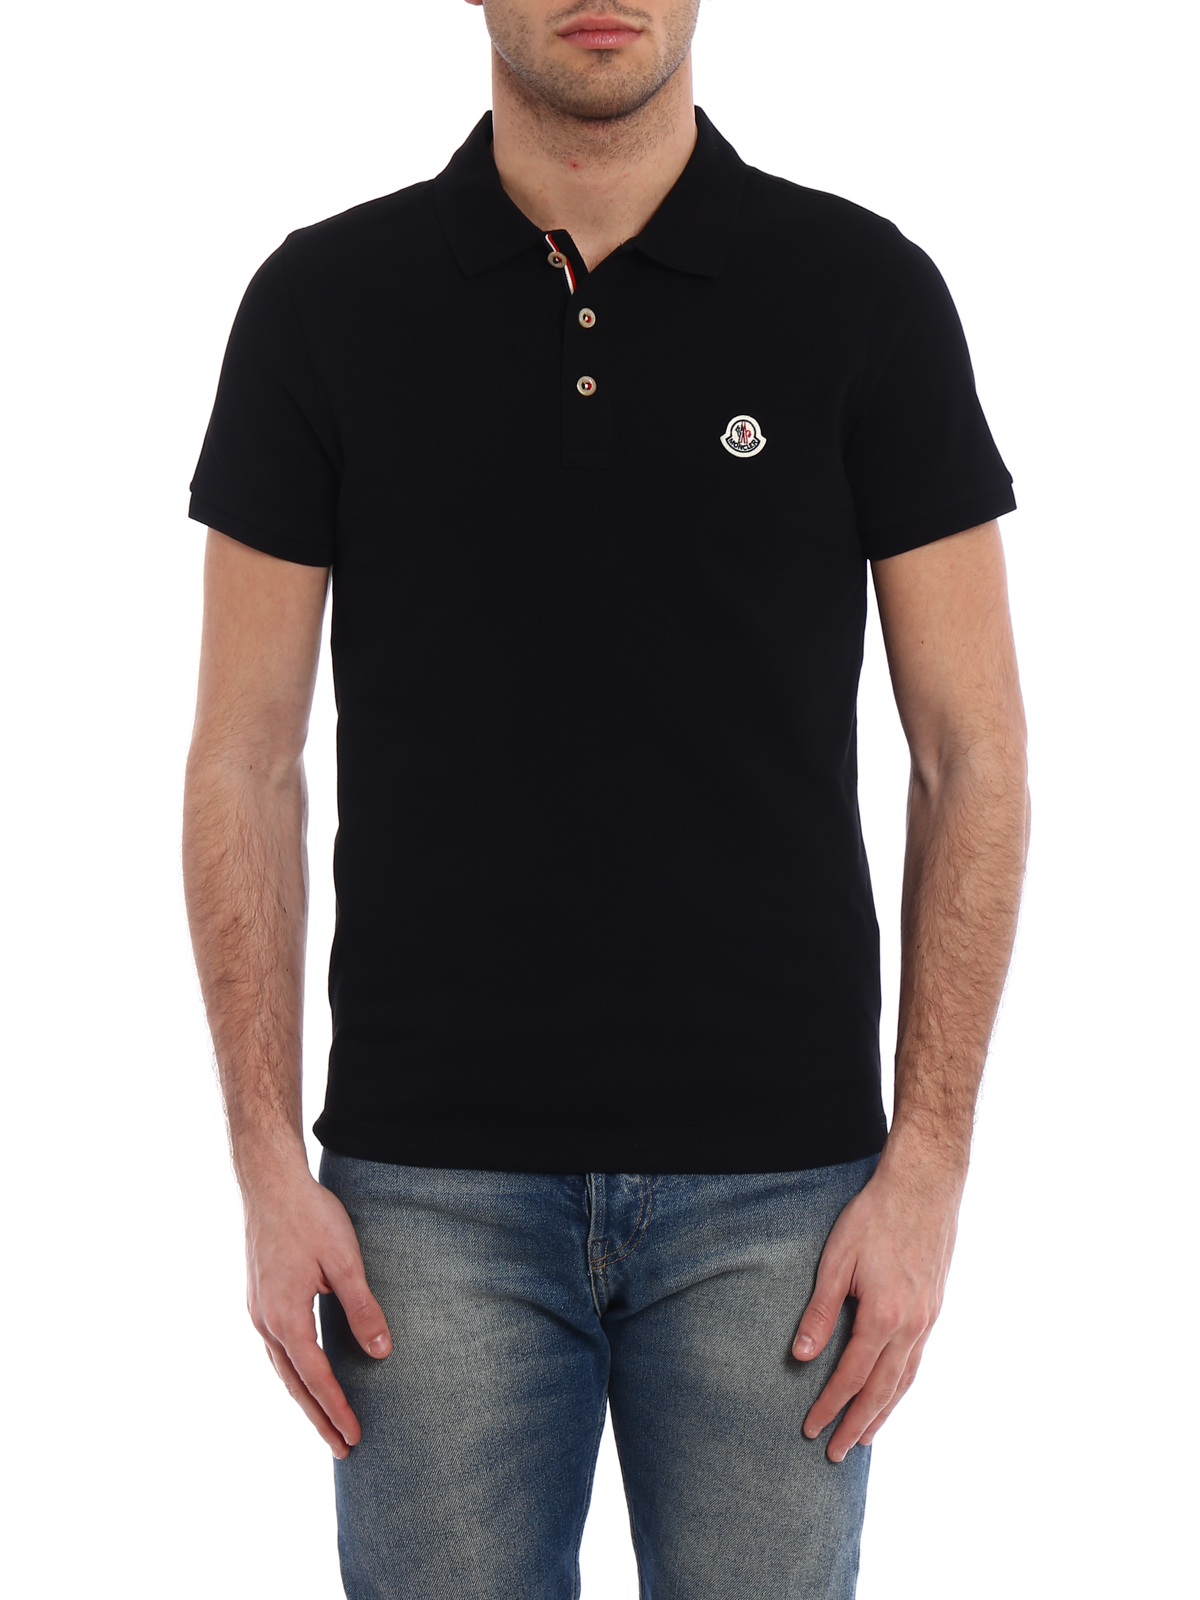 Markér cyklus Modsige Polo shirts Moncler - Tricolour placket black polo shirt -  D1091834080084556999